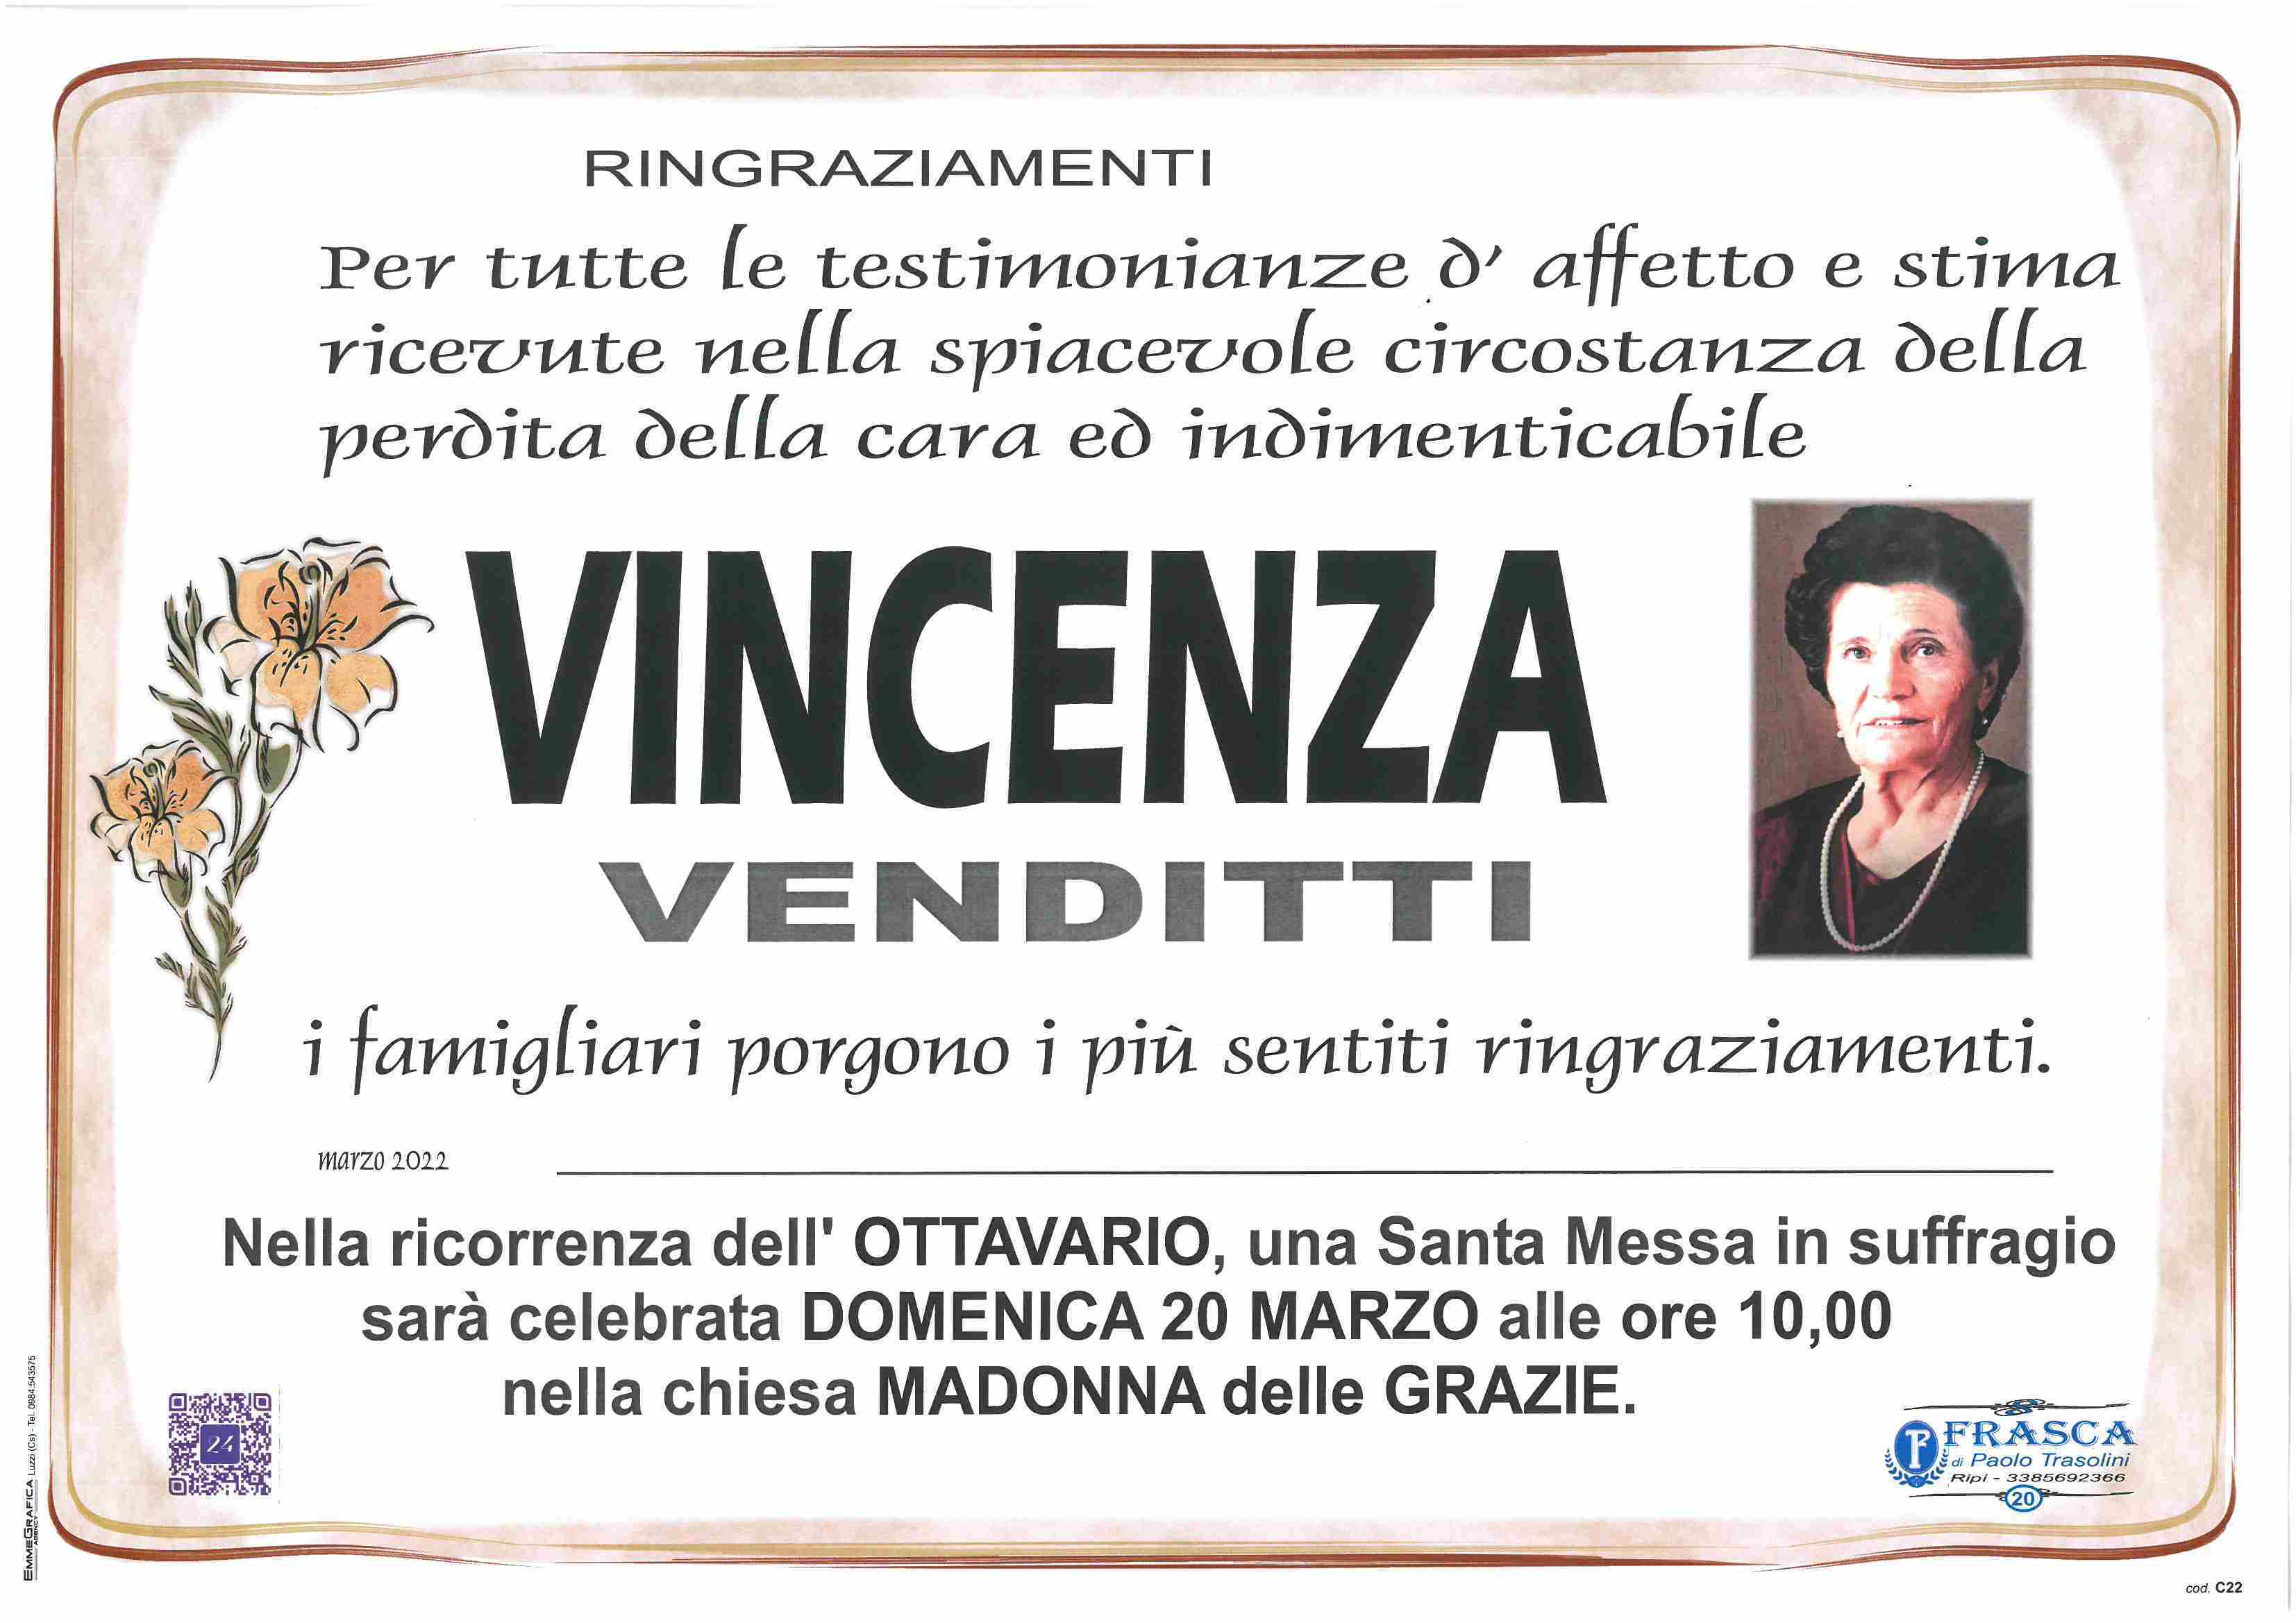 Vincenza Venditti